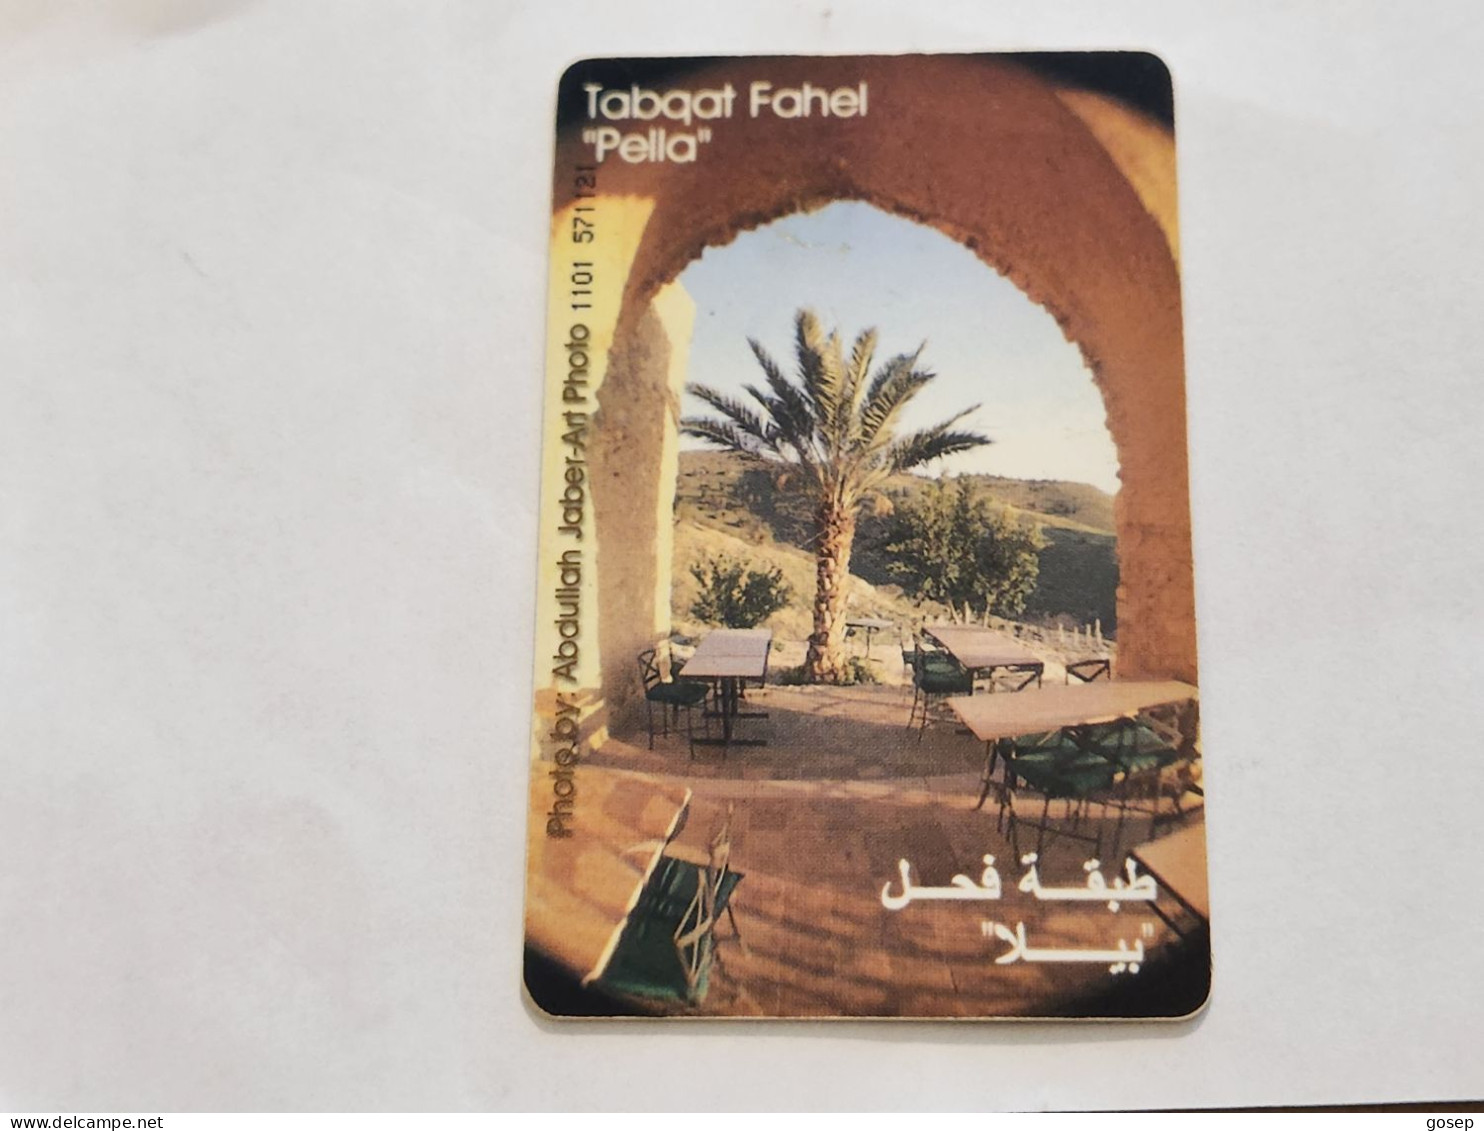 JORDAN-(JO-ALO-0067)-Tabqat Fahel "Pella-(185)-(1101-571121)-(3JD)-(01/2001)-used Card+1card Prepiad Free - Jordanie